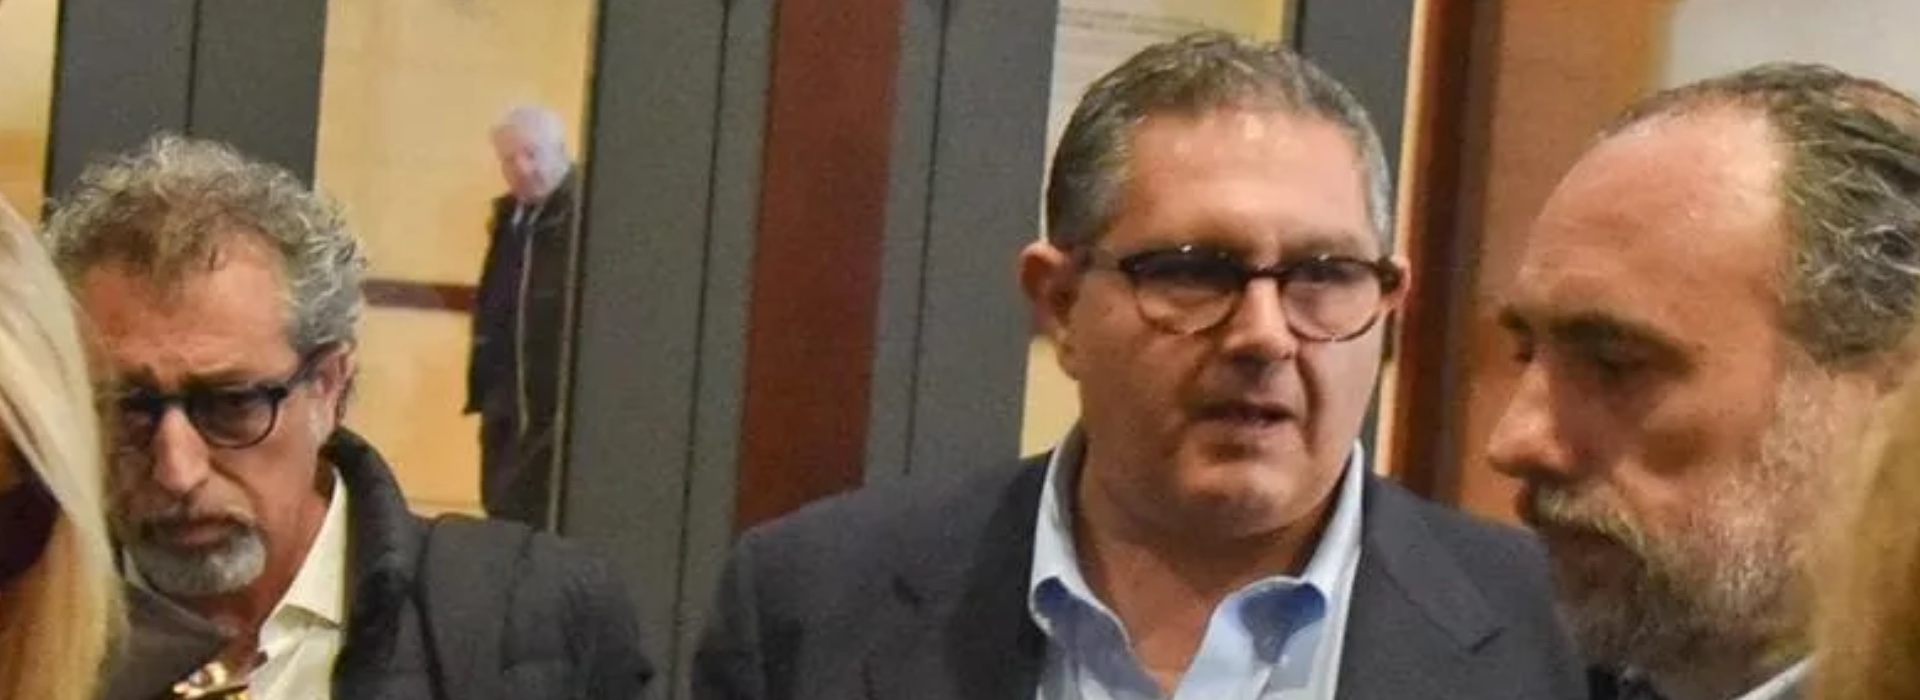 Arresto Giovanni Toti, ai domiciliari il capo di gabinetto: “Ha agevolato la mafia”